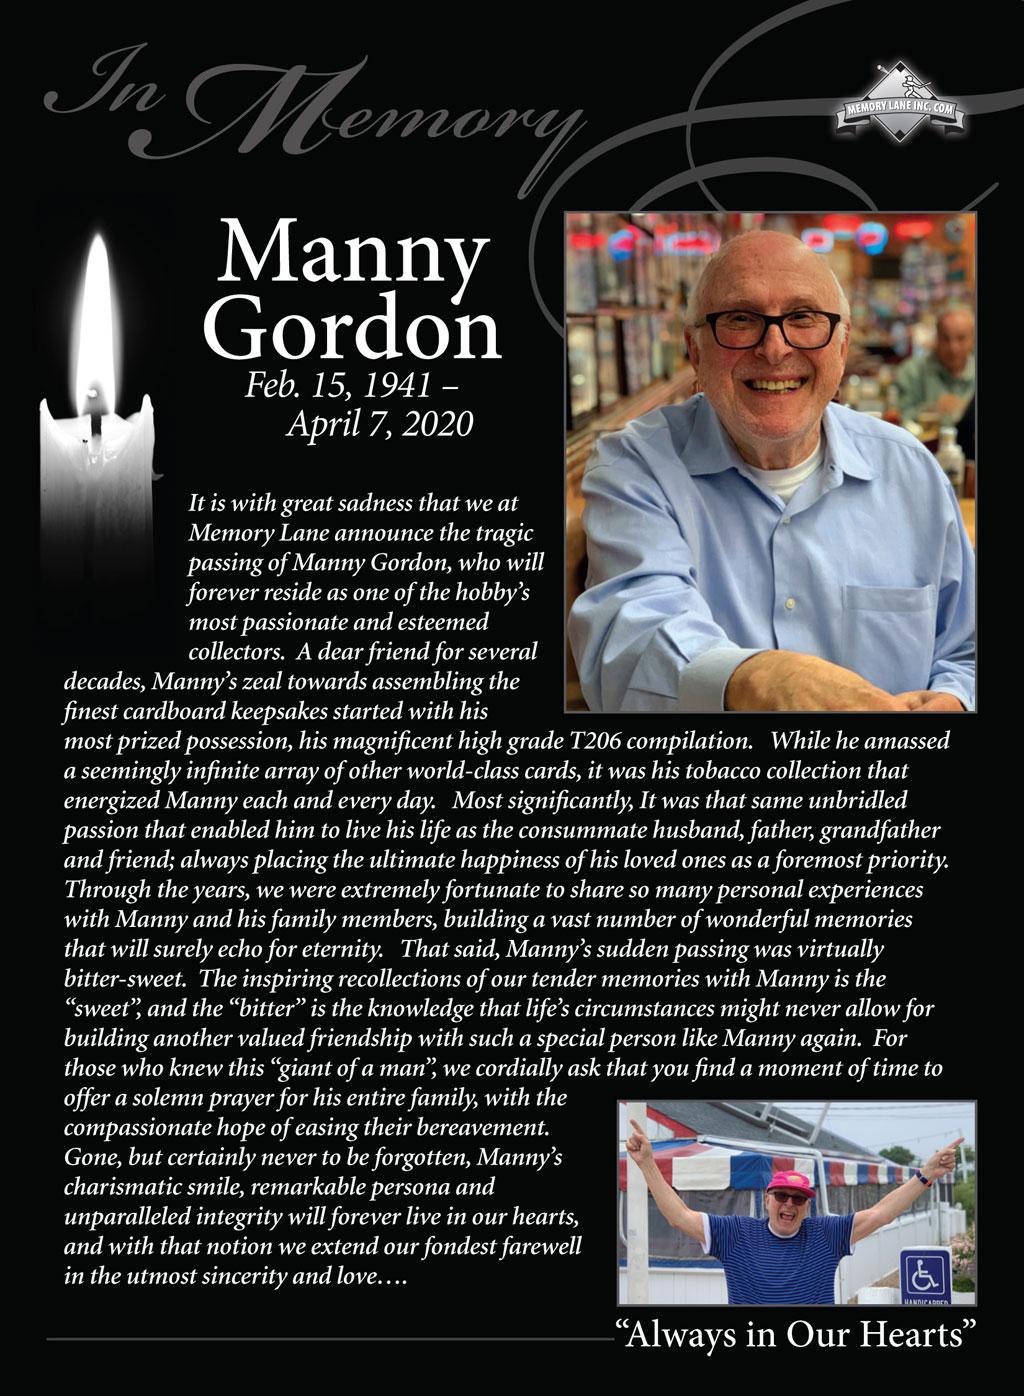 Manny Gordon